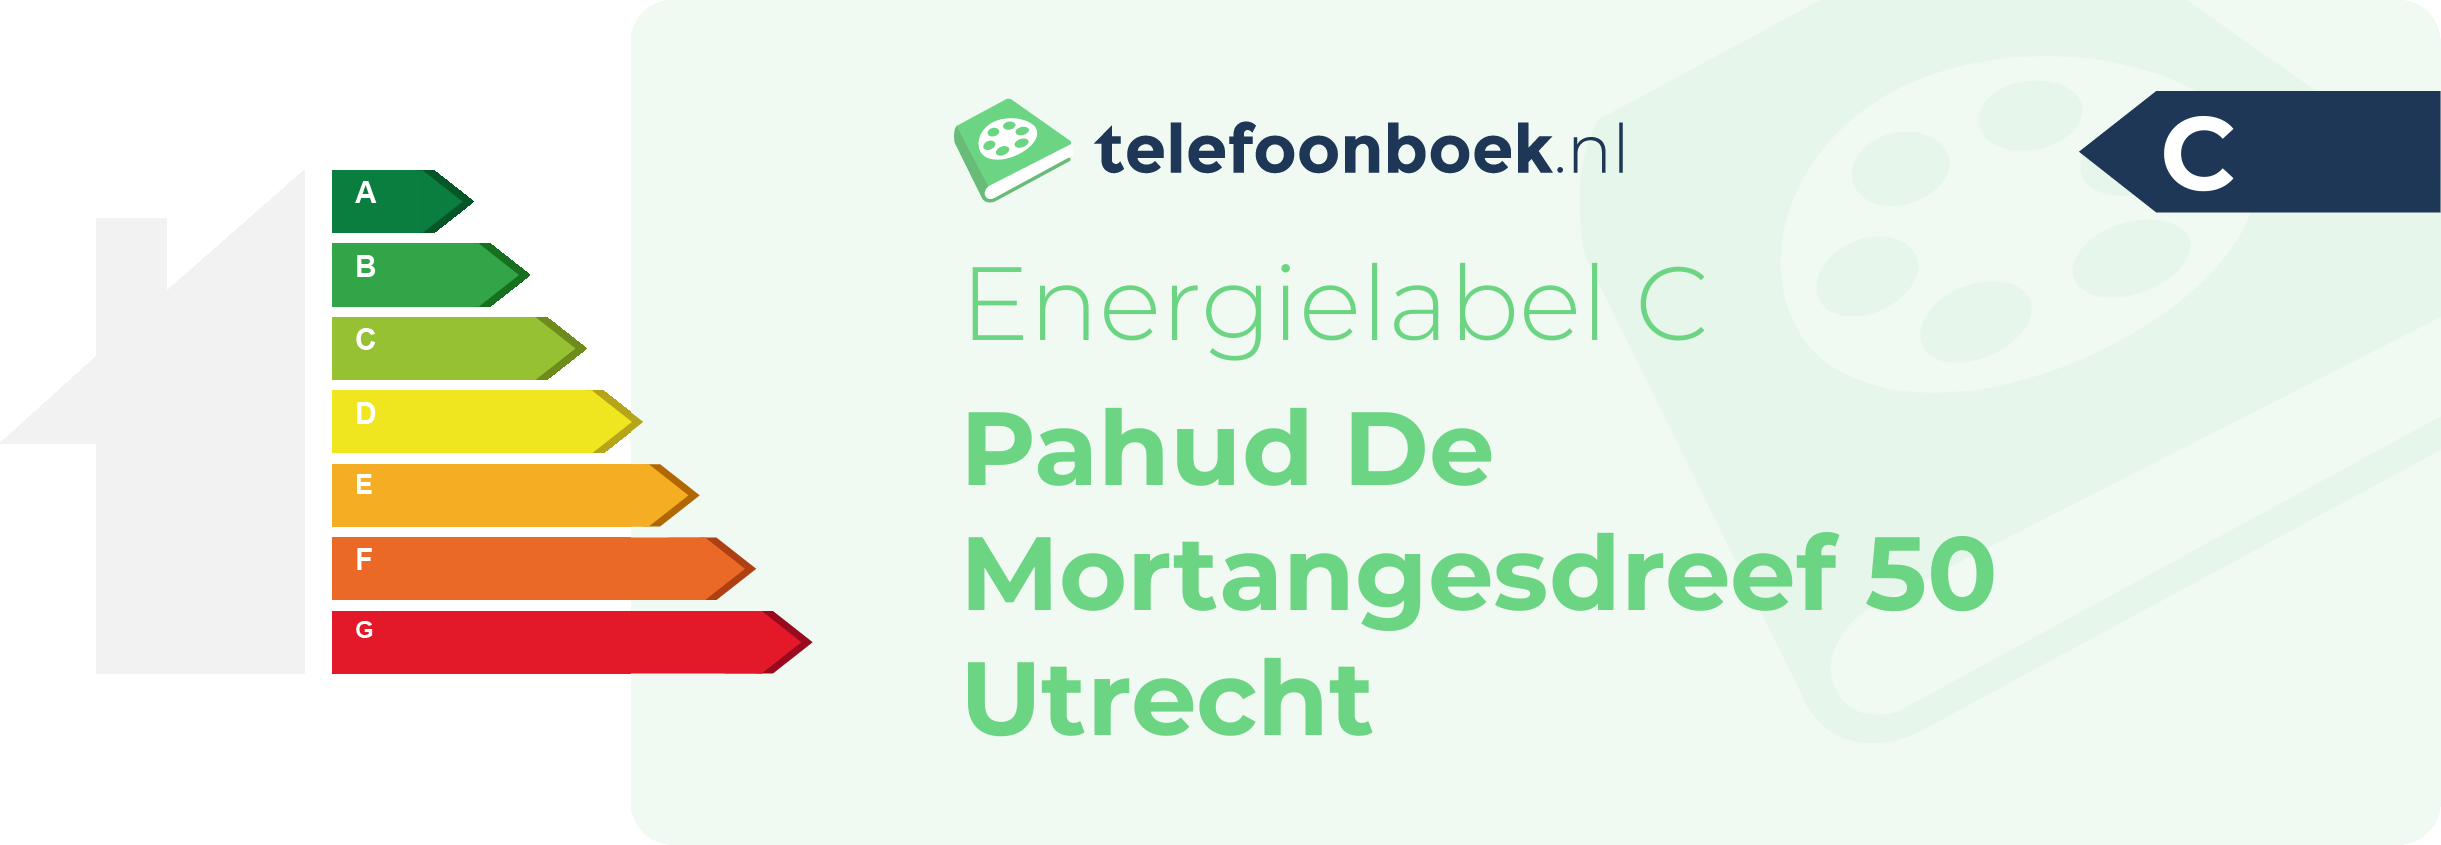 Energielabel Pahud De Mortangesdreef 50 Utrecht